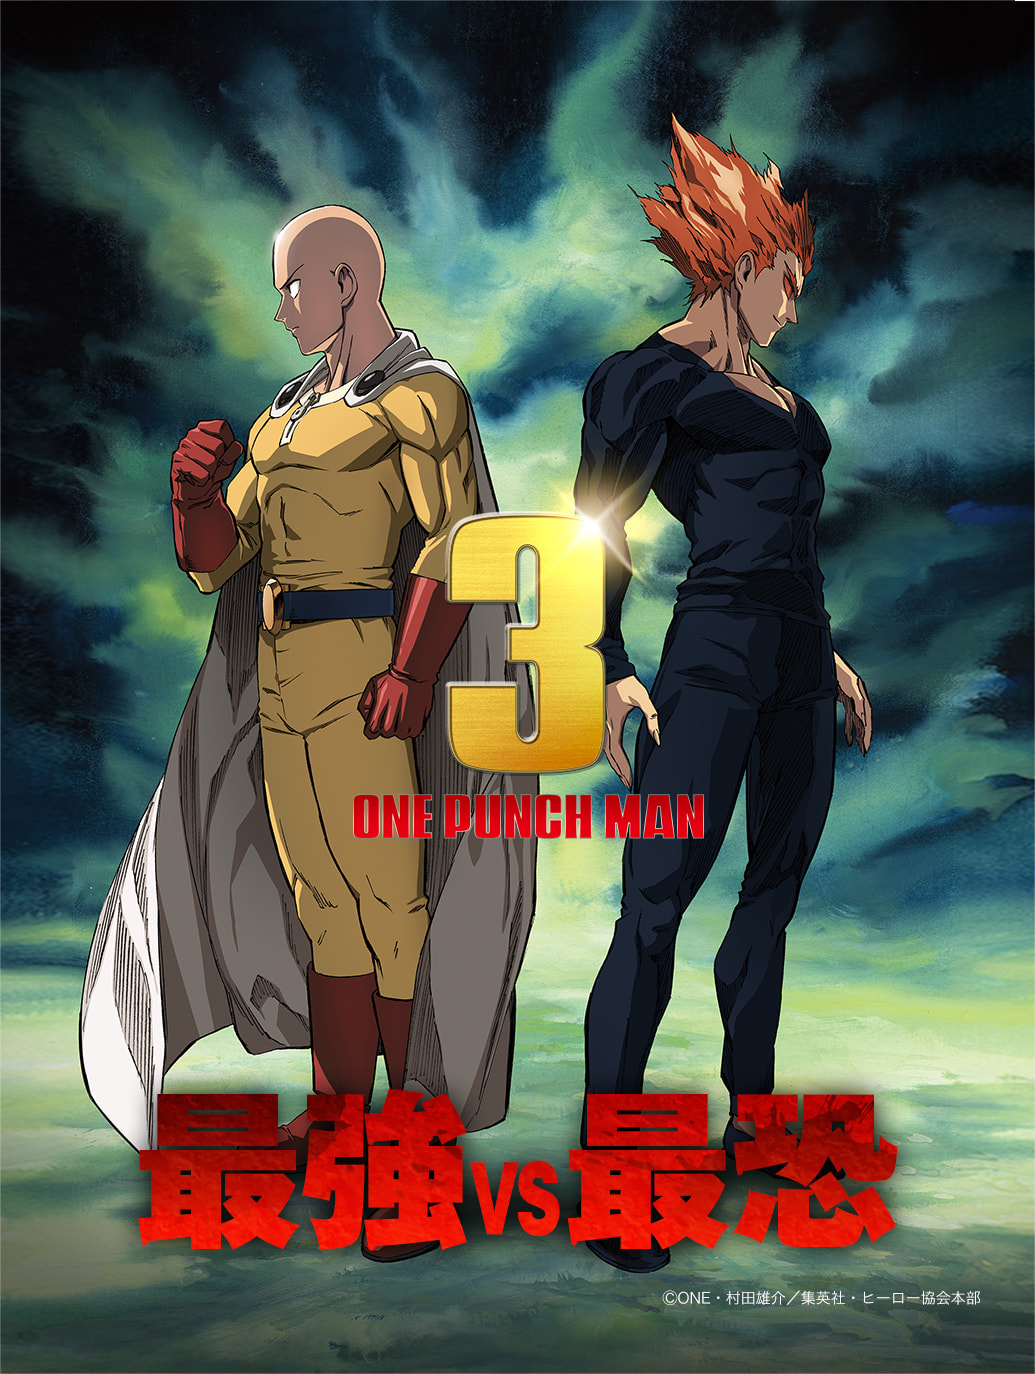 Гароу против всех — смотрим тизер-трейлер третьего сезона аниме Ванпанчмен (One-Punch Man)